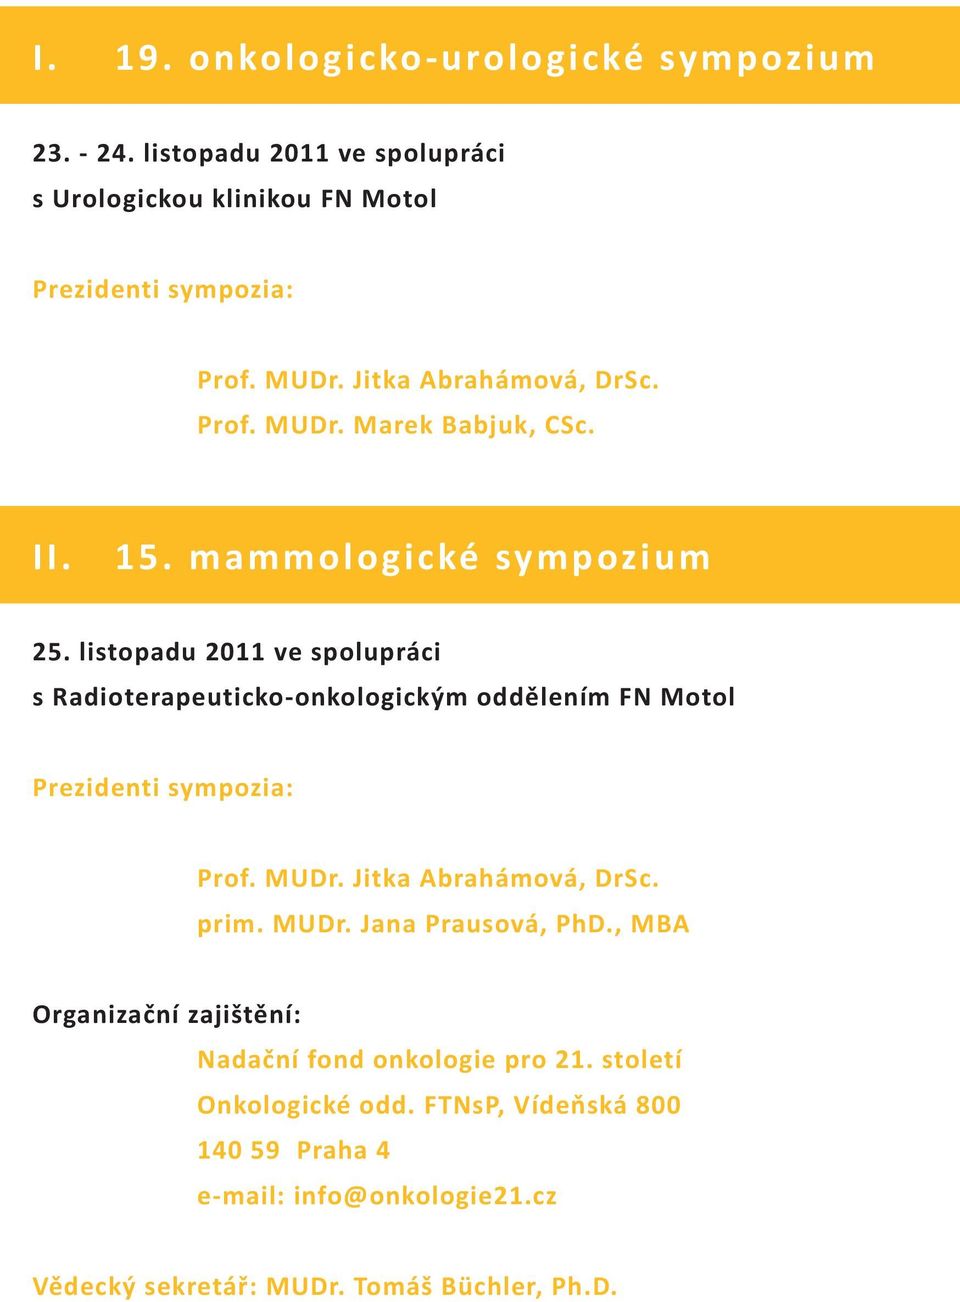 listopadu 2011 ve spolupráci s Radioterapeuticko-onkologickým oddělením FN Motol Prezidenti sympozia: Prof. MUDr. Jitka Abrahámová, DrSc. prim. MUDr. Jana Prausová, PhD.